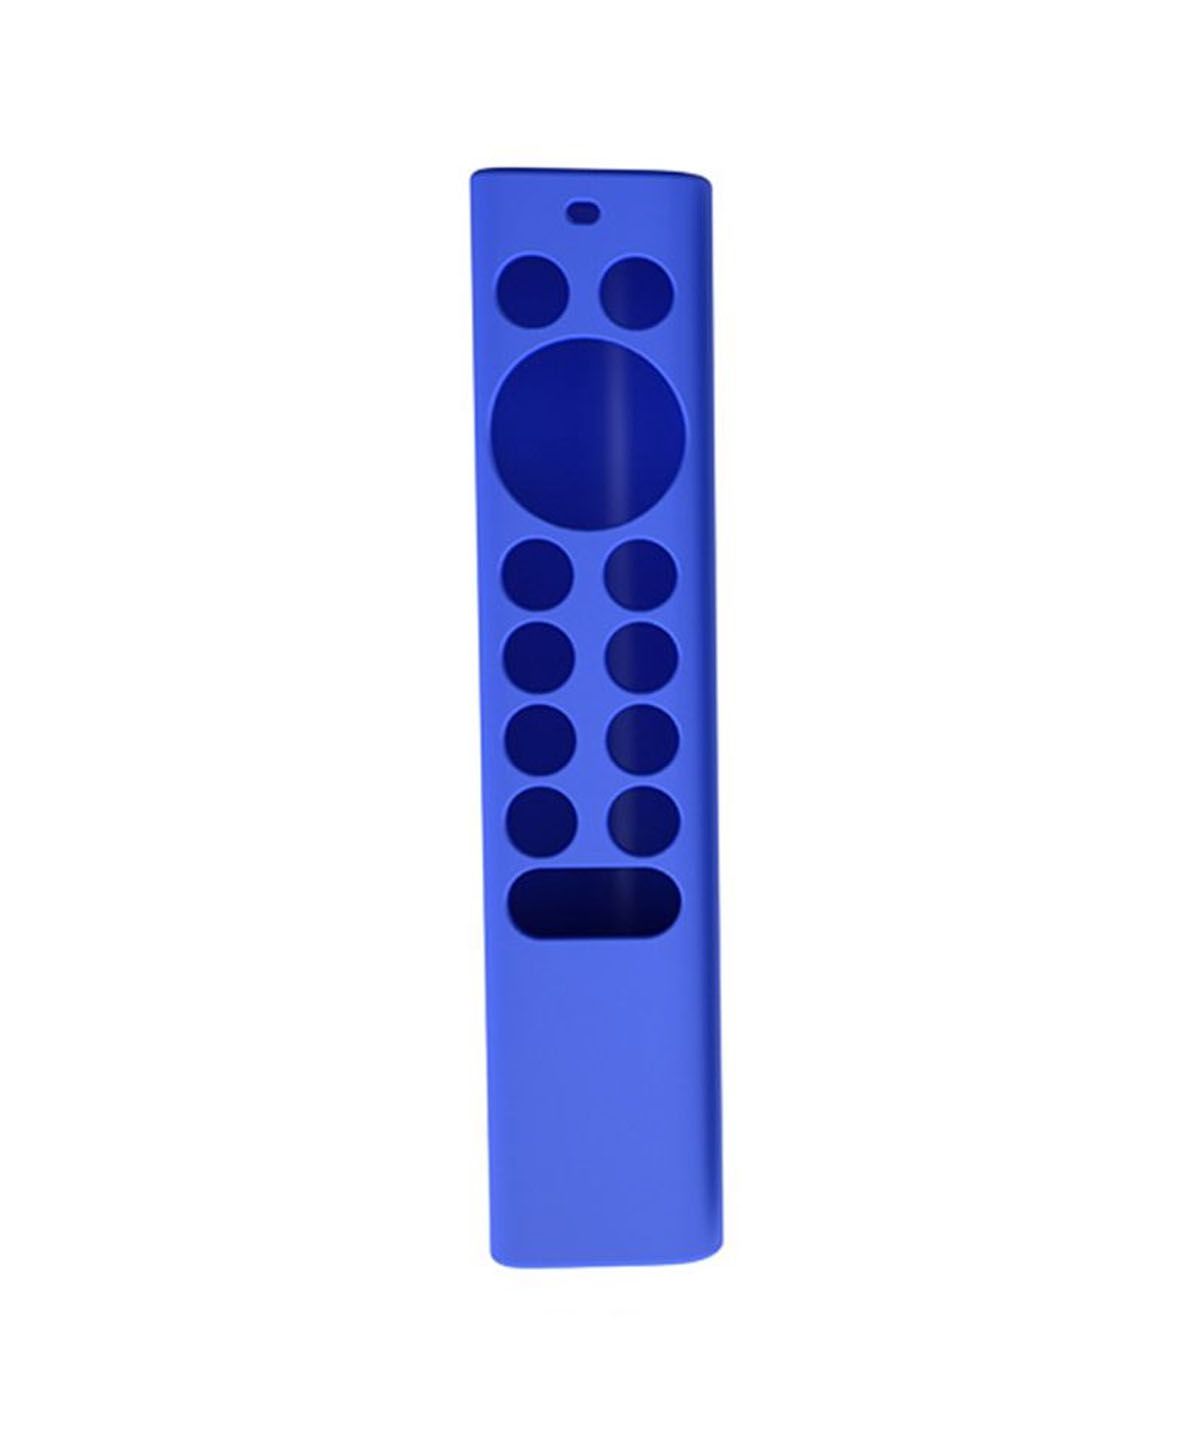 Silicone Case Remote Nvidia Shield Tv 2019 Blue